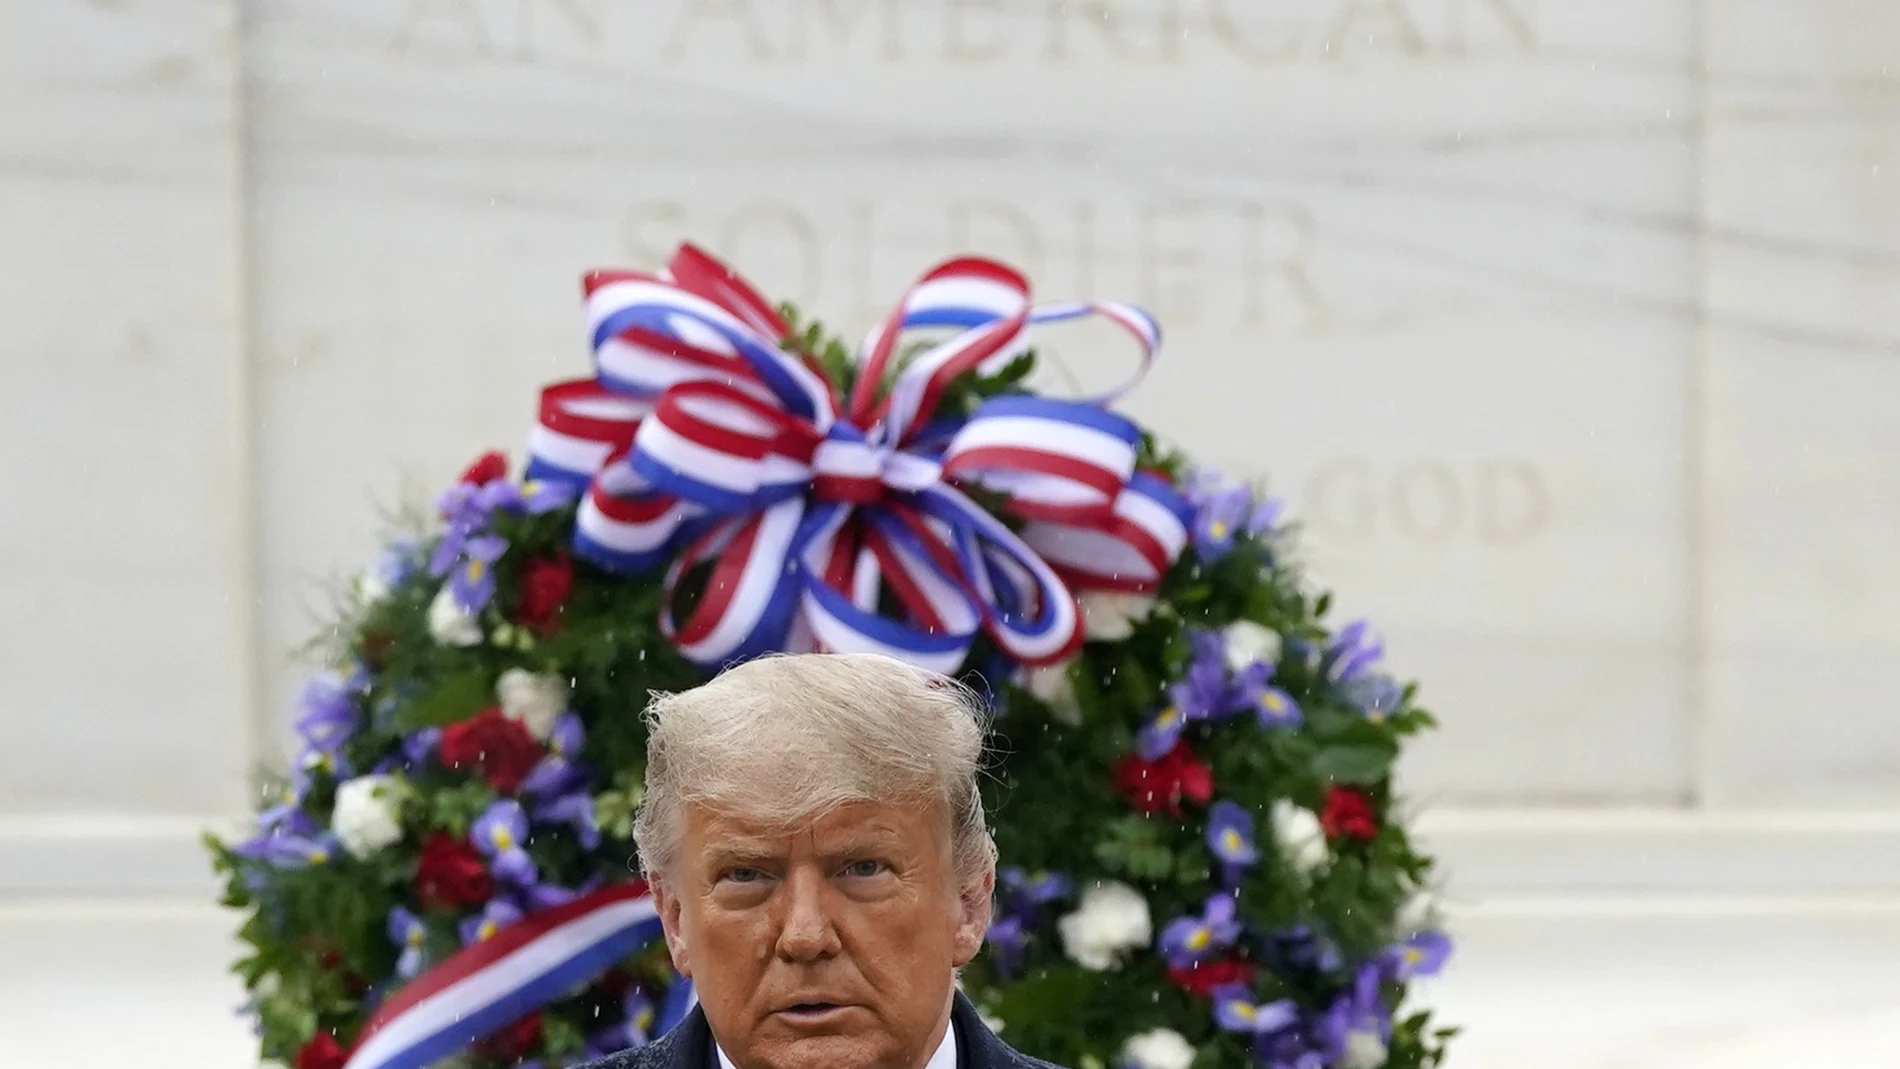 El presidente Donald Trump participó ayer en una ceremonia por el Día de los Veteranos